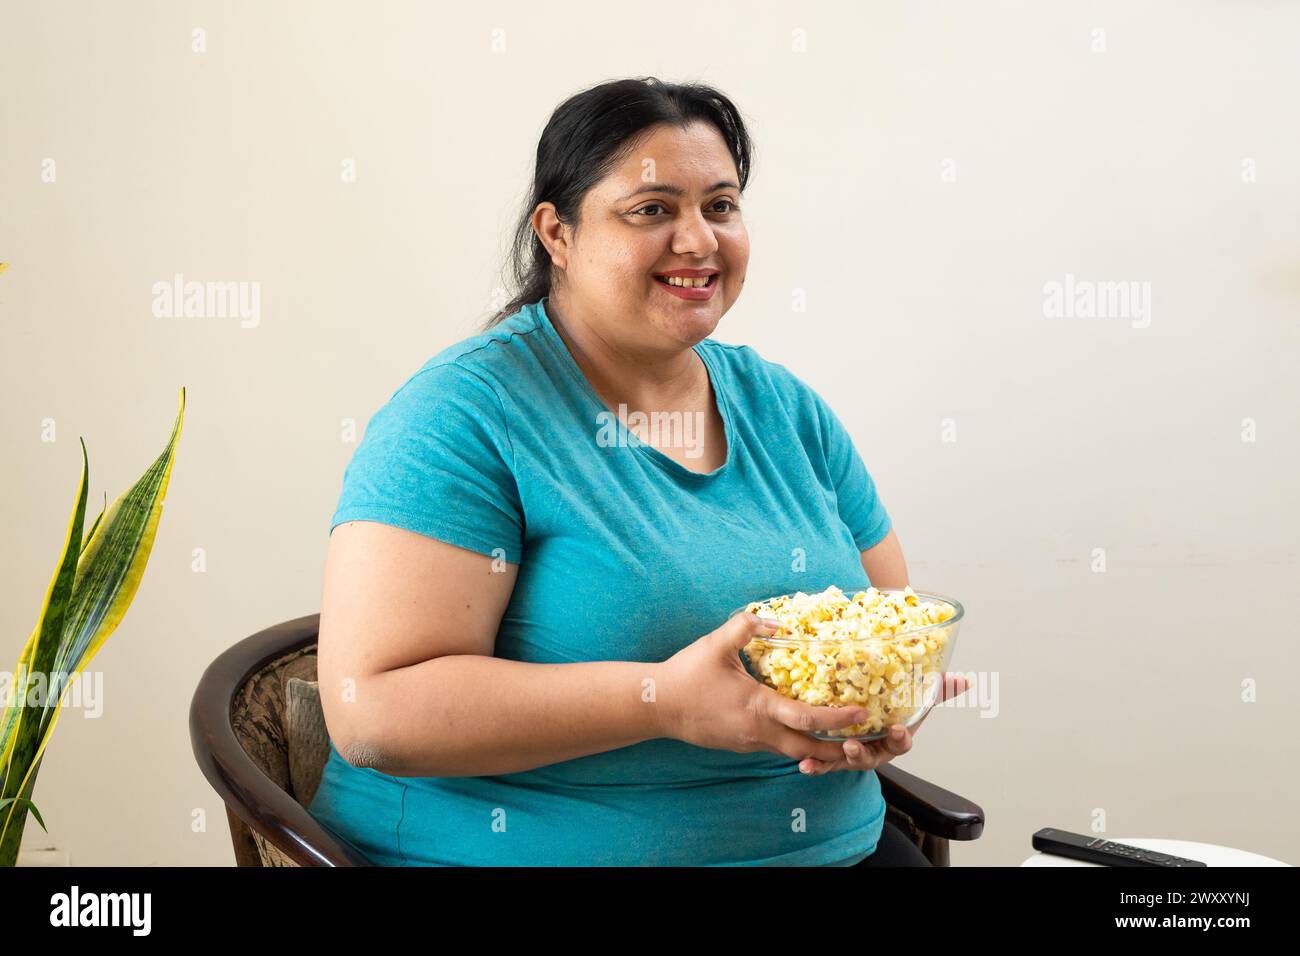 Donna indiana grassa in sovrappeso seduta su una sedia con una ciotola di popcorn in mano. Inoltre, una donna di taglia superiore gusta spuntini. Concetto di alimentazione malsana. Foto Stock